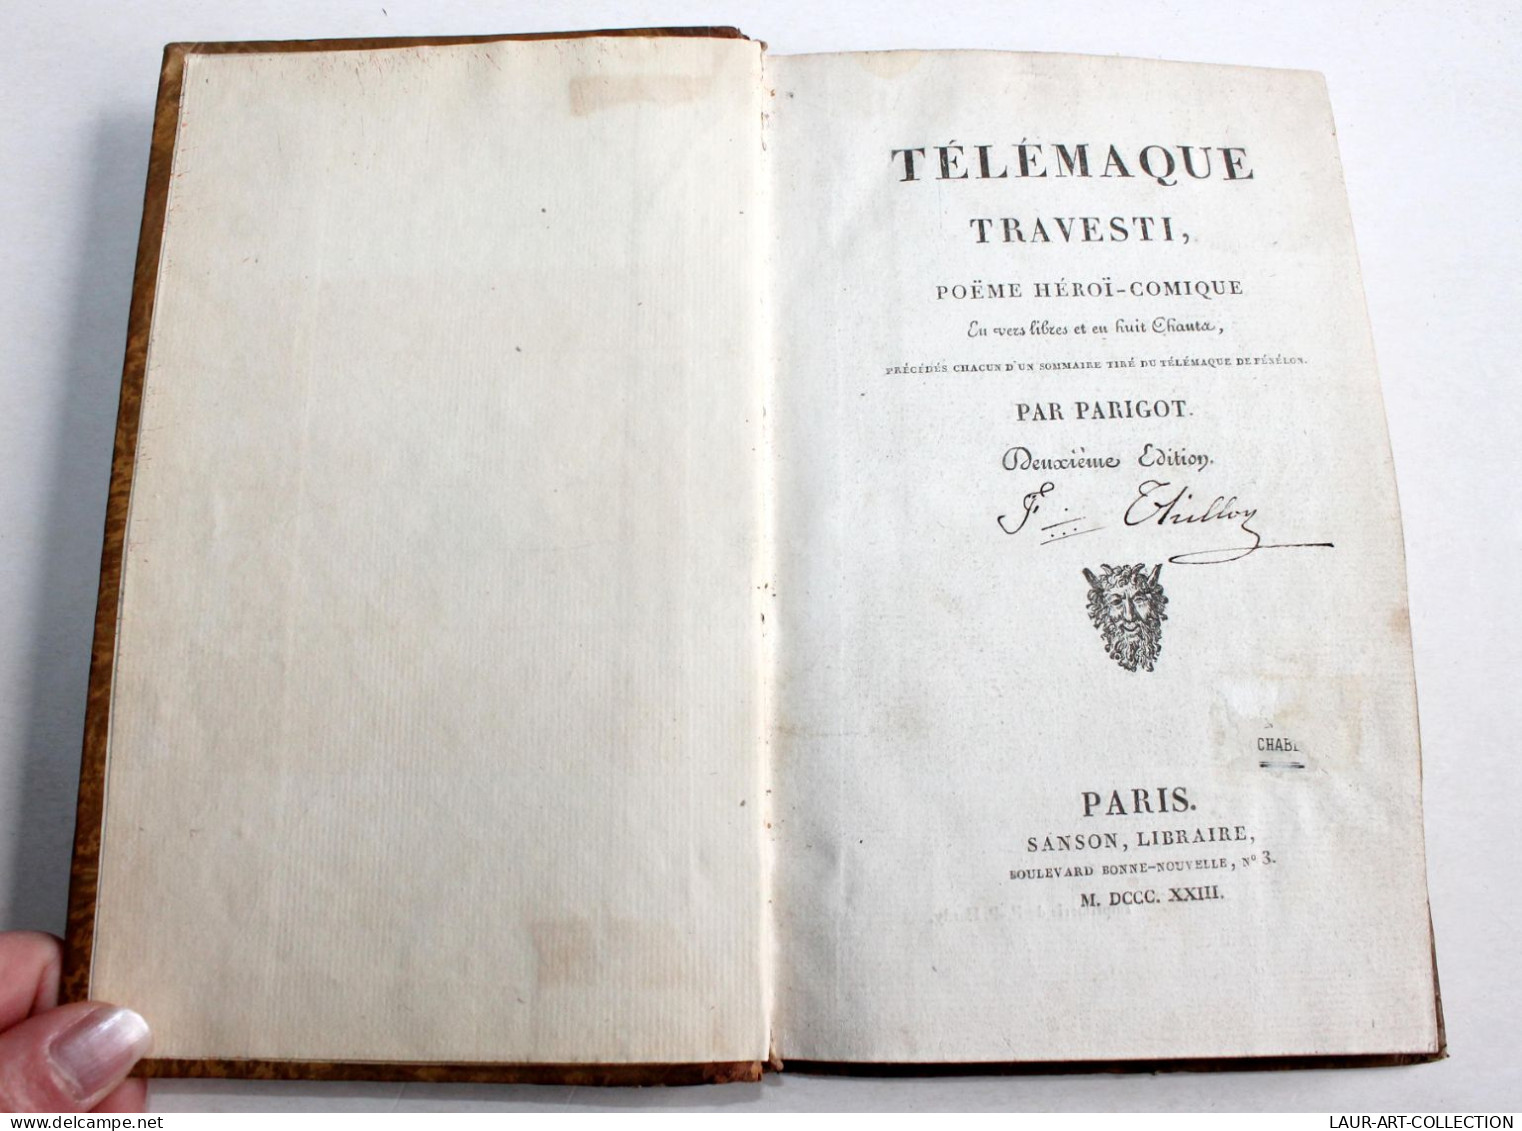 TELEMAQUE TRAVESTI POEME HEROI-COMIQUE EN VERS LIBRE Par PARIGOT 2e EDITION 1823 / ANCIEN LIVRE XIXe SIECLE (1803.79) - Auteurs Français